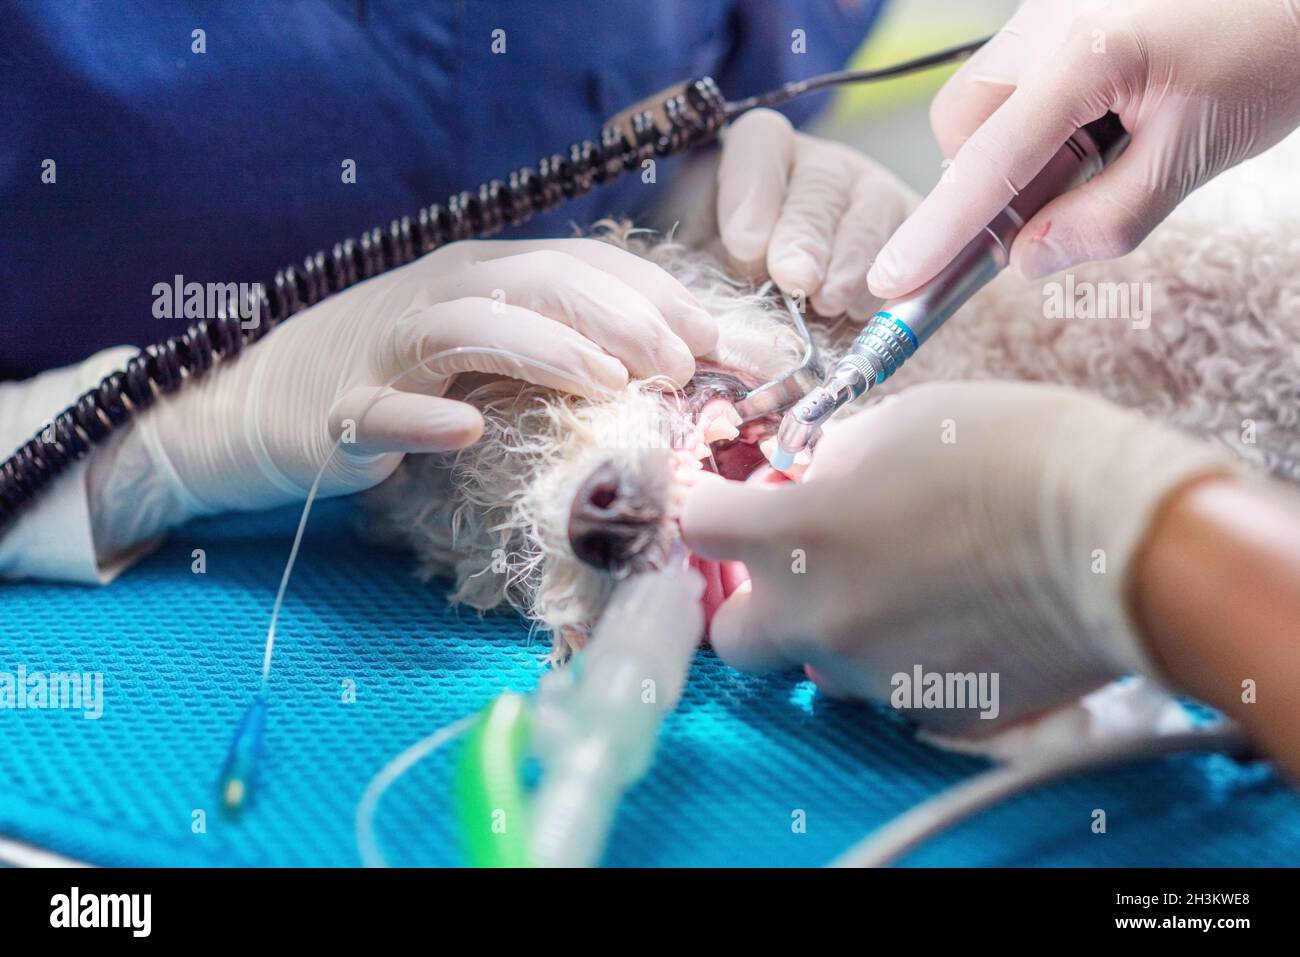 Odontología veterinaria. El veterinario dentista cirujano trata y quita los dientes de un perro bajo anestesia en la mesa de operaciones Foto de stock